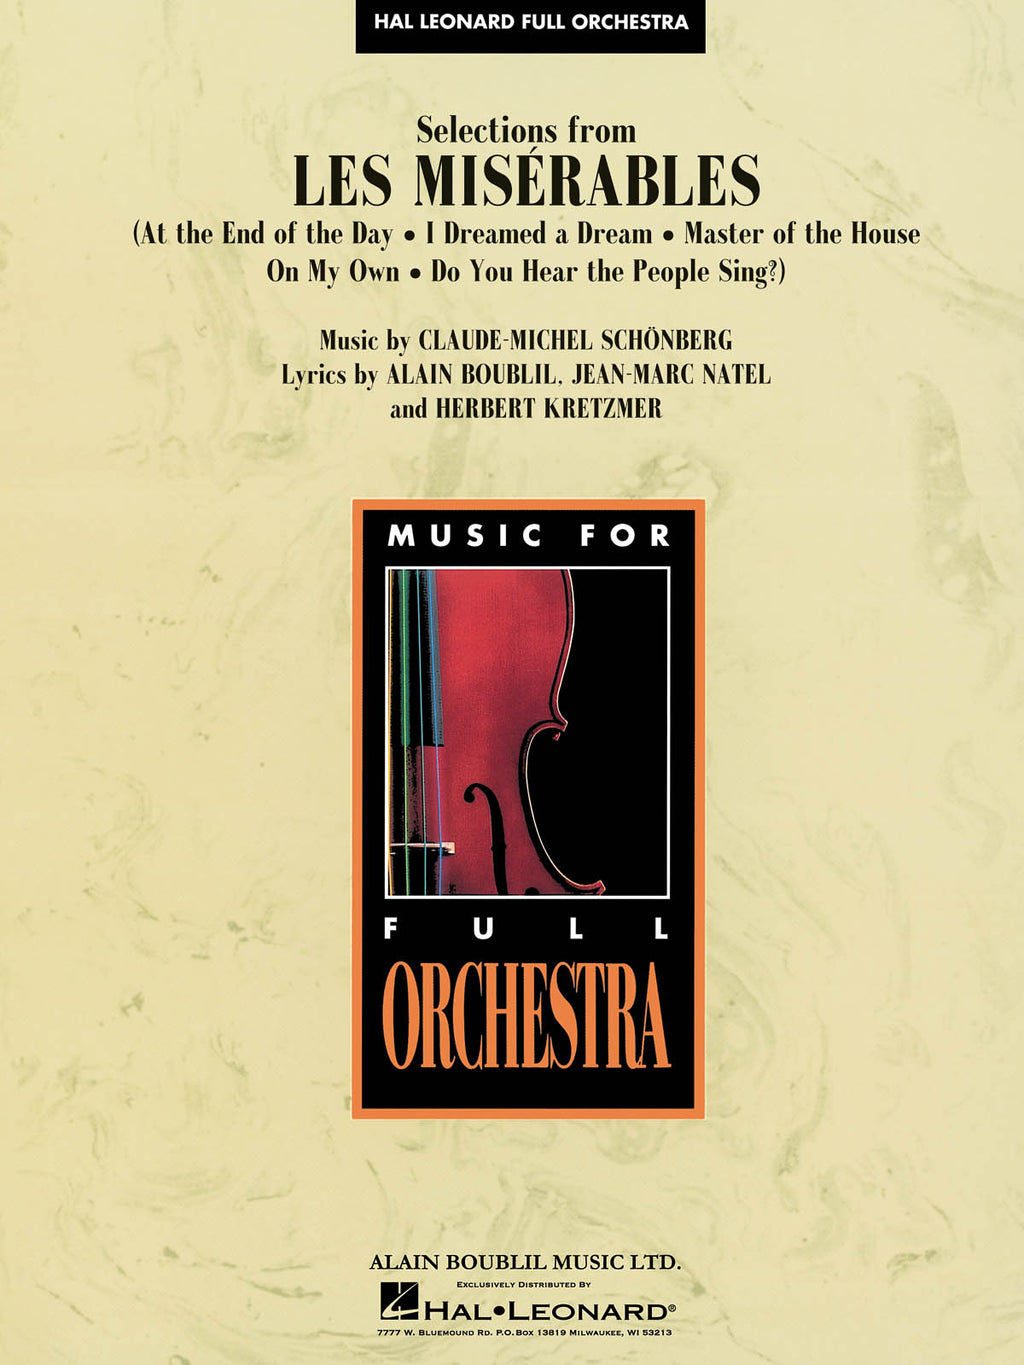 オーケストラ楽譜》「レ・ミゼラブル」セレクション(Les Miserable 